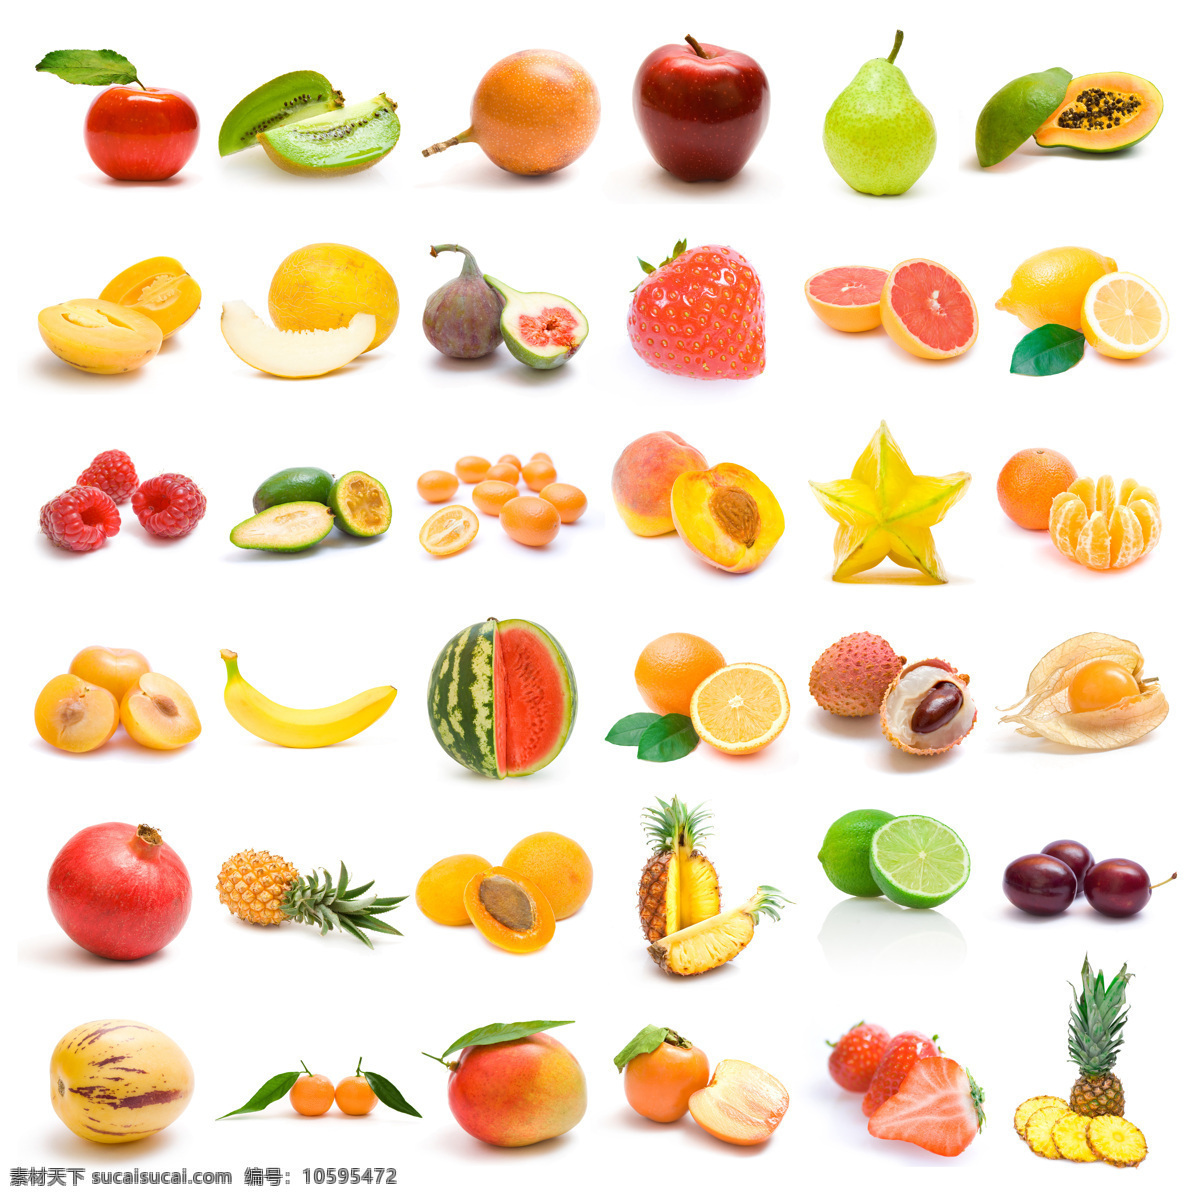 各类 水果 背景 西瓜 橙子 石榴 芒果 柠檬 苹果 西柚 果实 果子 新鲜水果 水果背景 水果图片 餐饮美食